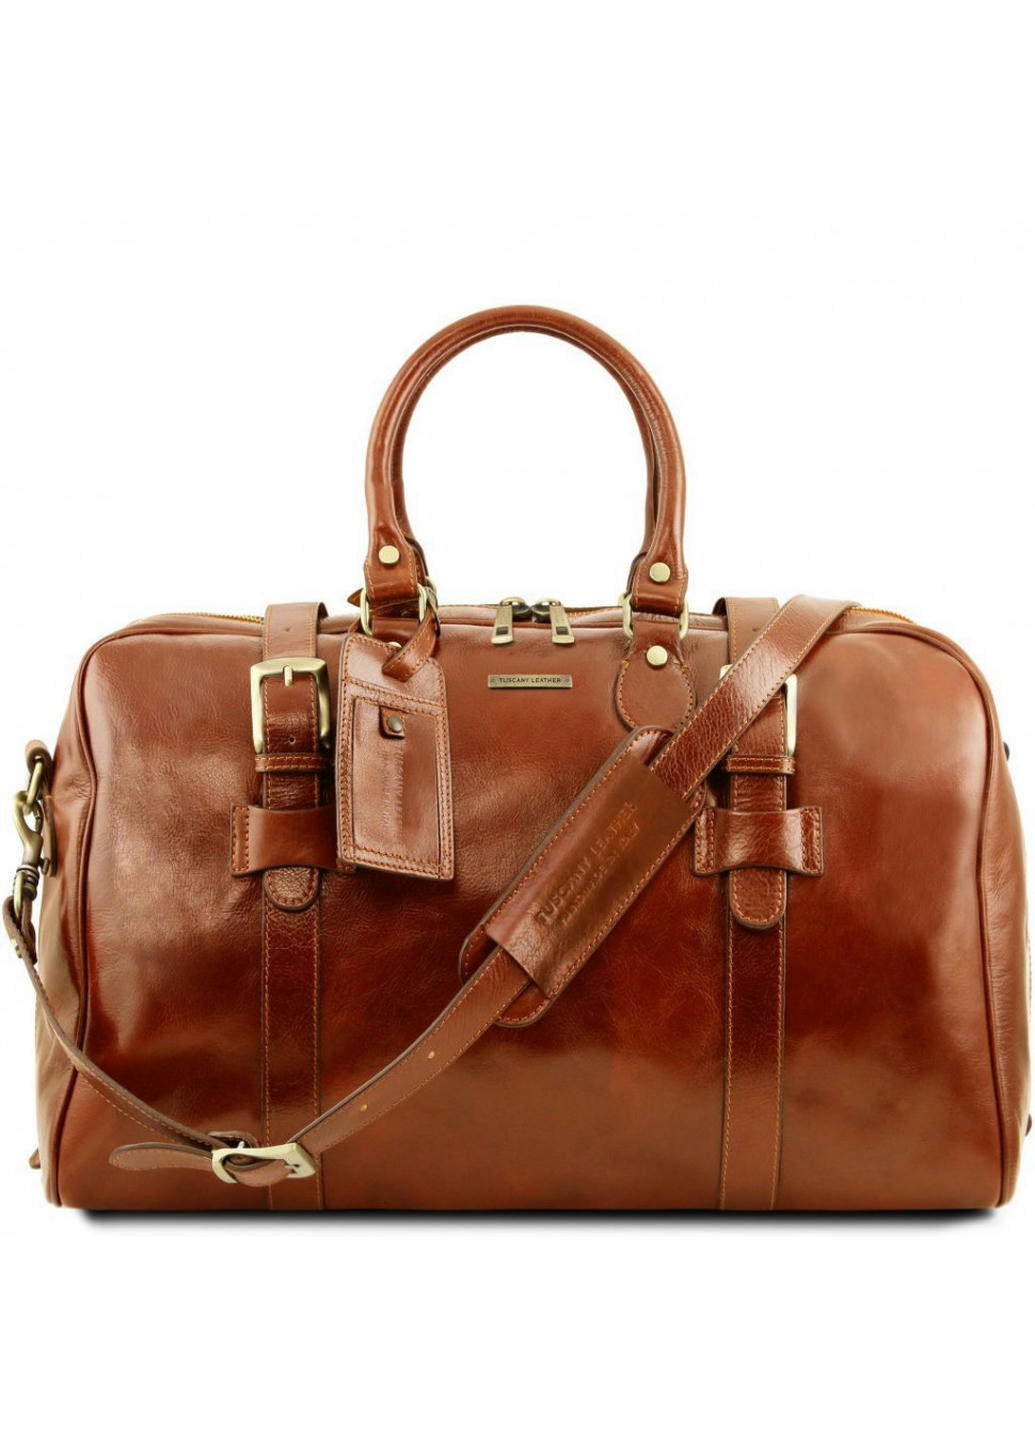 Дорожная кожаная сумка с пряжками - Большой размер Tuscany TL141248 Voyager (Мед) Tuscany Leather (257657645)